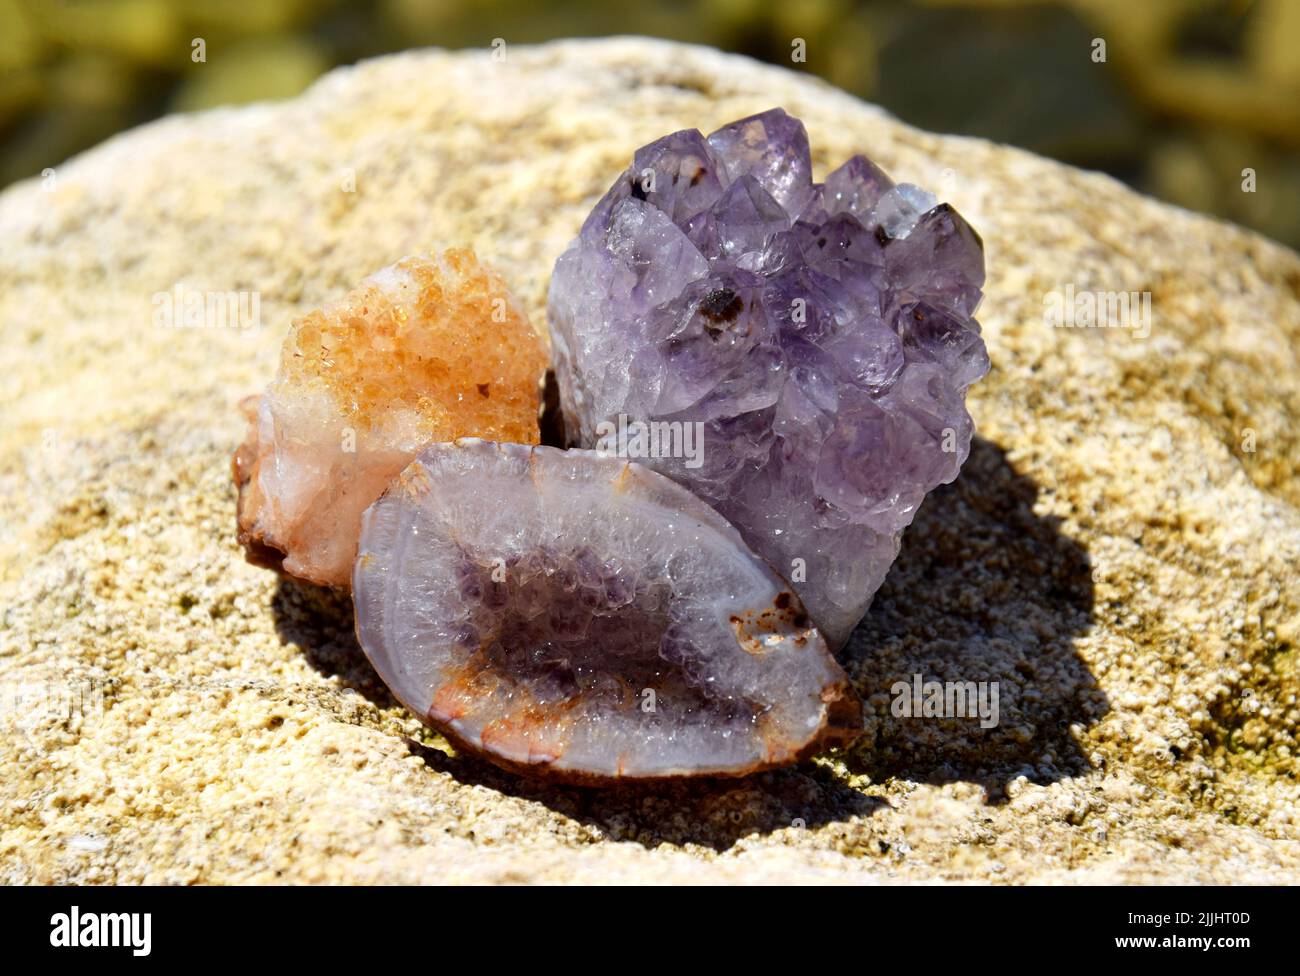 Eine schöne Druse und Geode aus Amethyst und Druse aus Citrin liegen auf einem Stein. Kristalle von Halbedelsteinen in der Sonne. Stockfoto